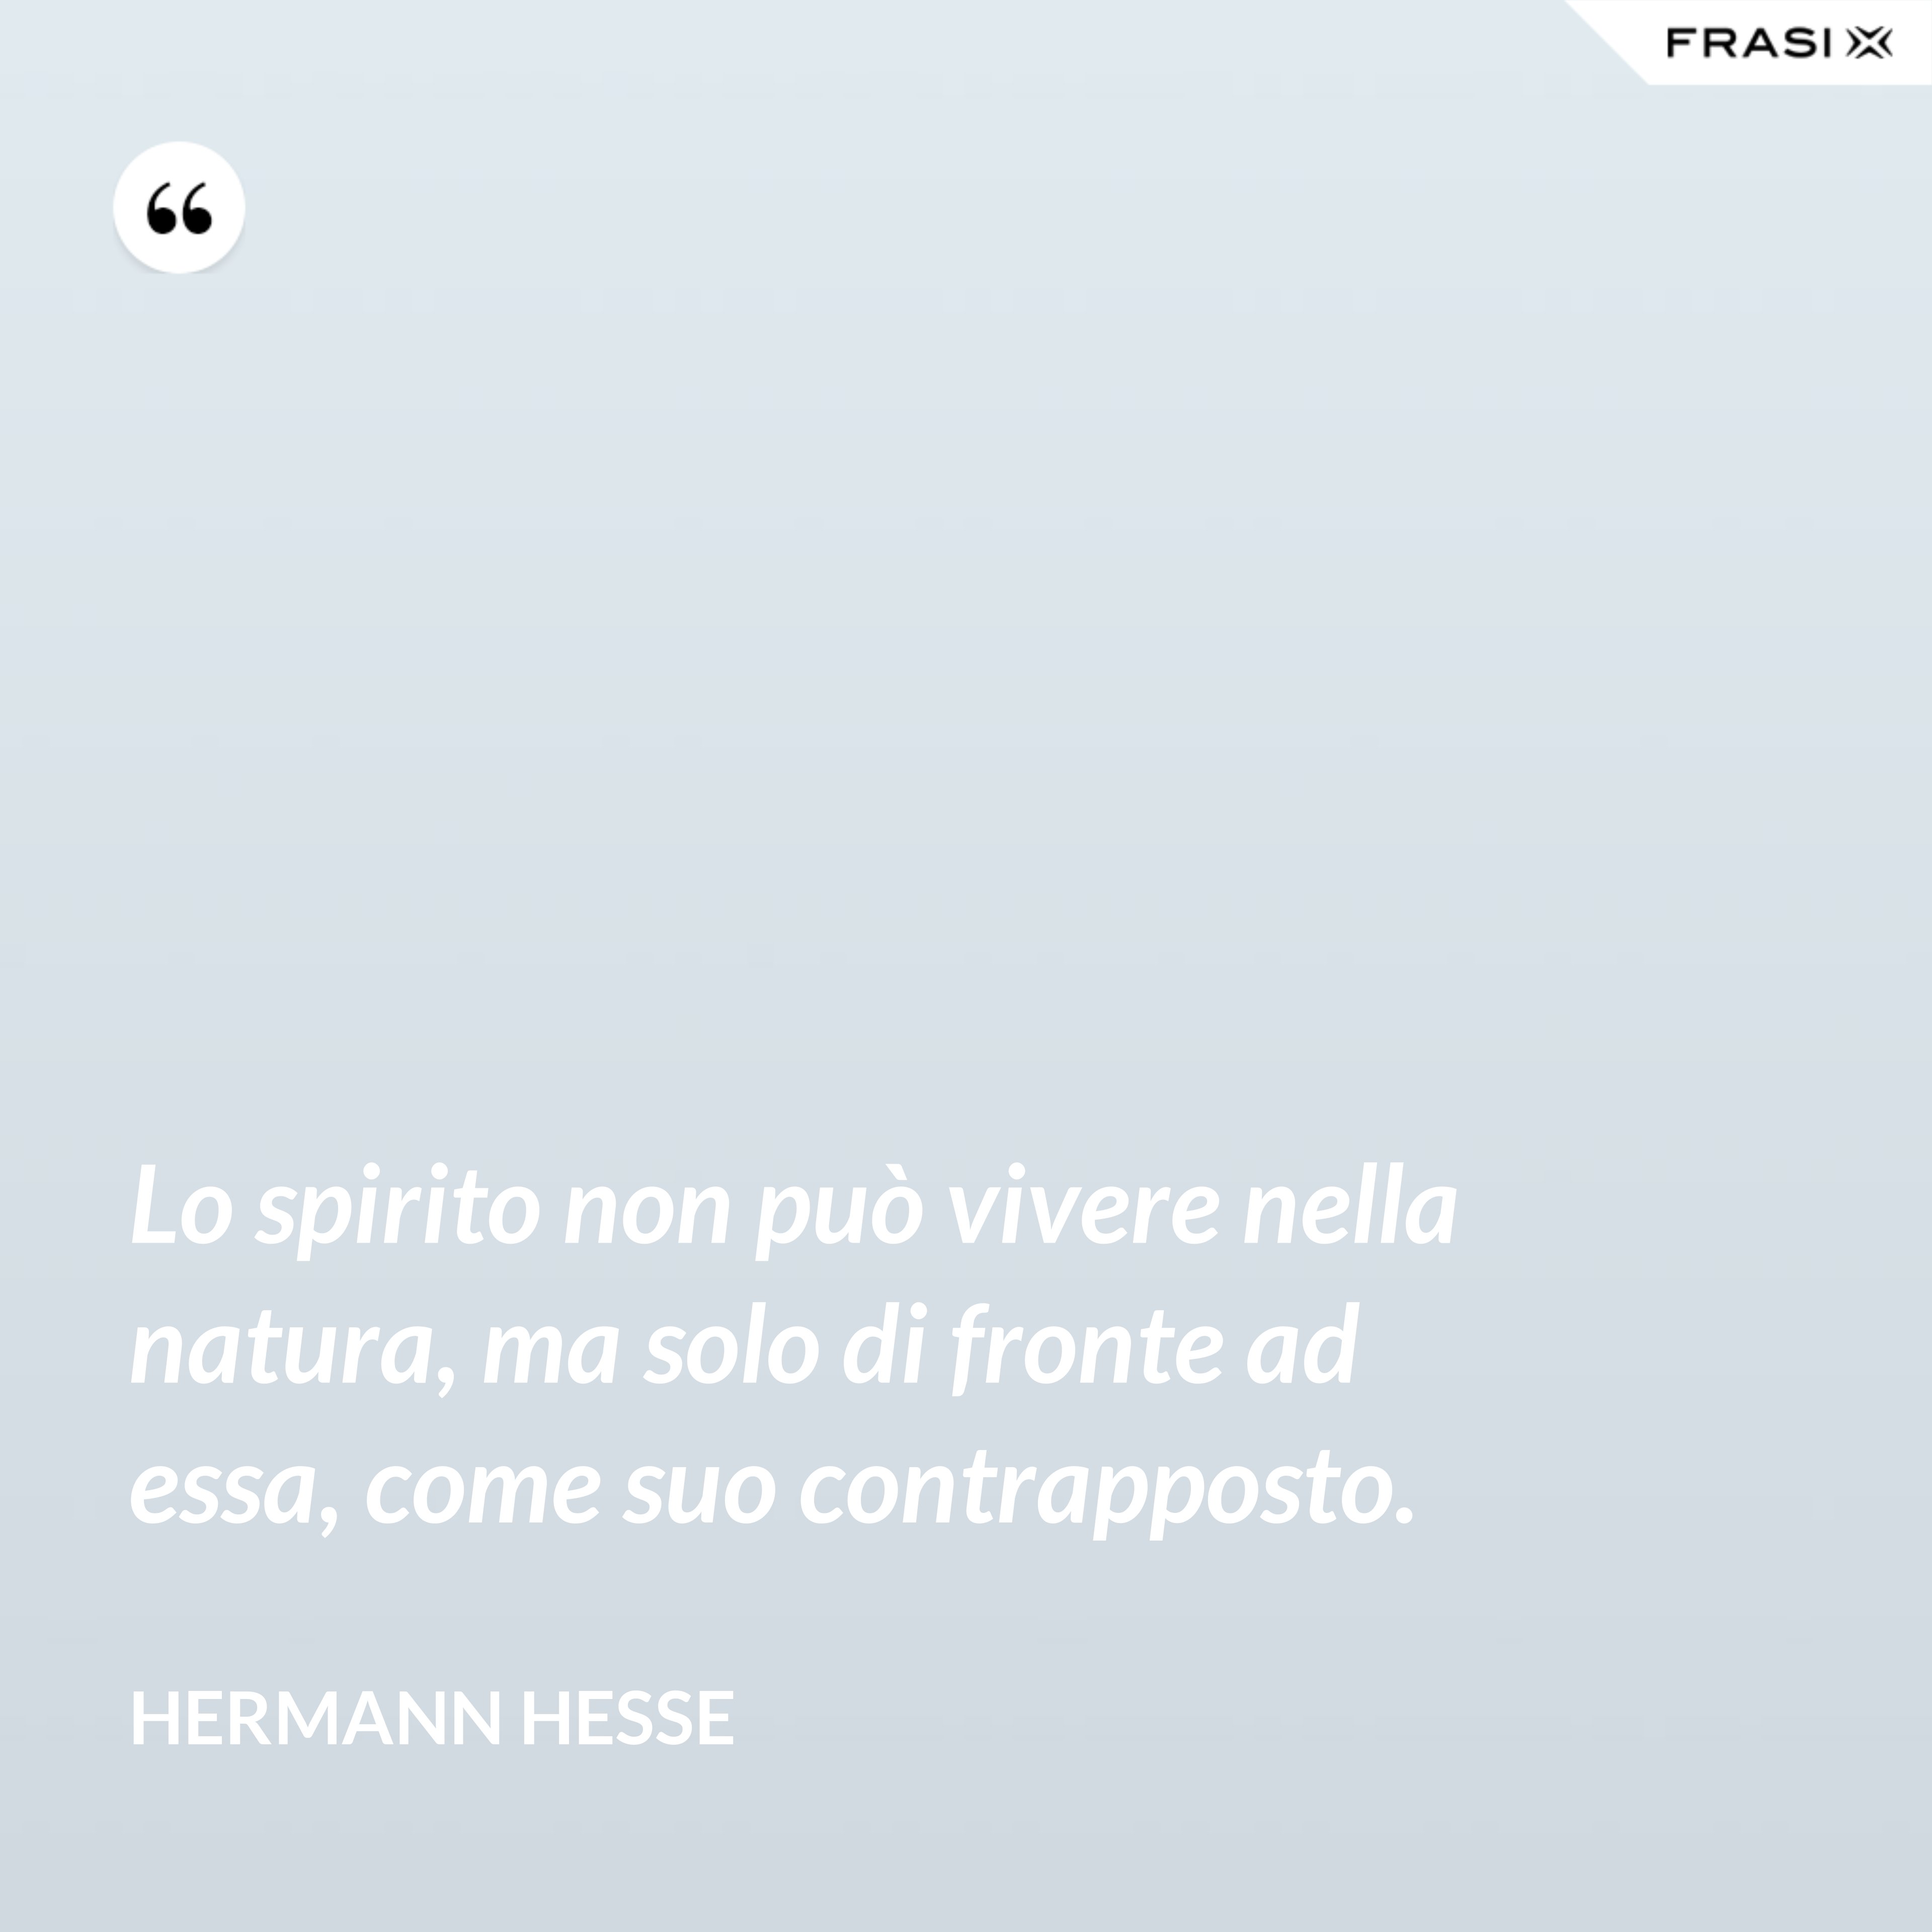 Lo spirito non può vivere nella natura, ma solo di fronte ad essa, come suo contrapposto. - Hermann Hesse